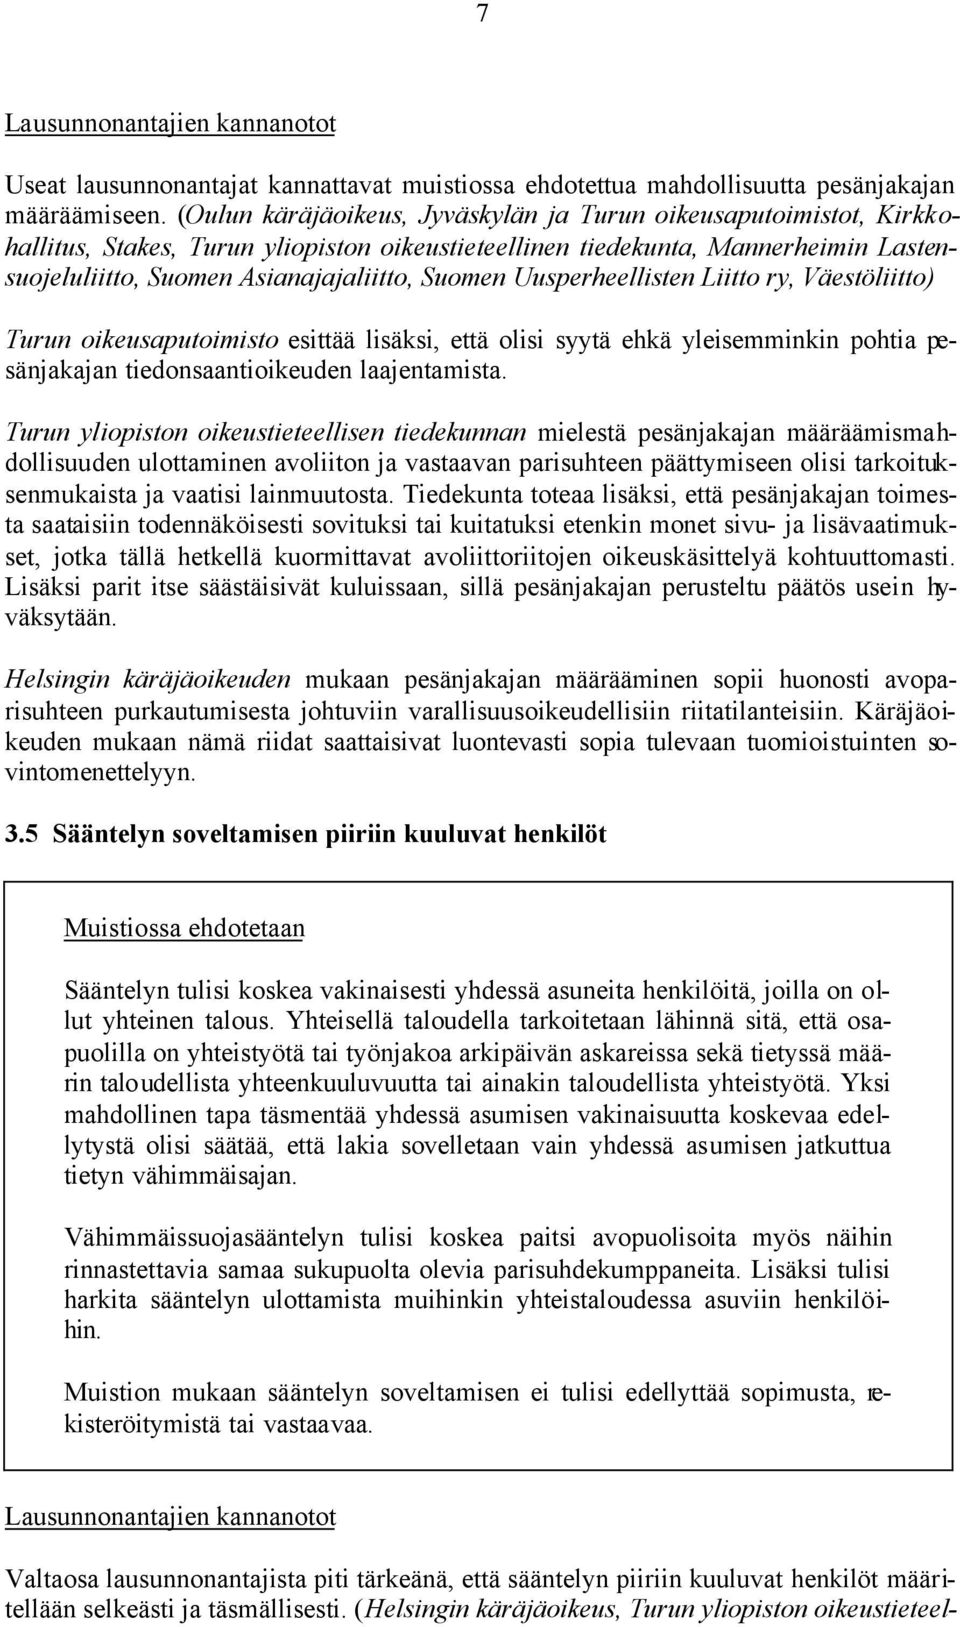 Uusperheellisten Liitto ry, Väestöliitto) Turun oikeusaputoimisto esittää lisäksi, että olisi syytä ehkä yleisemminkin pohtia pesänjakajan tiedonsaantioikeuden laajentamista.